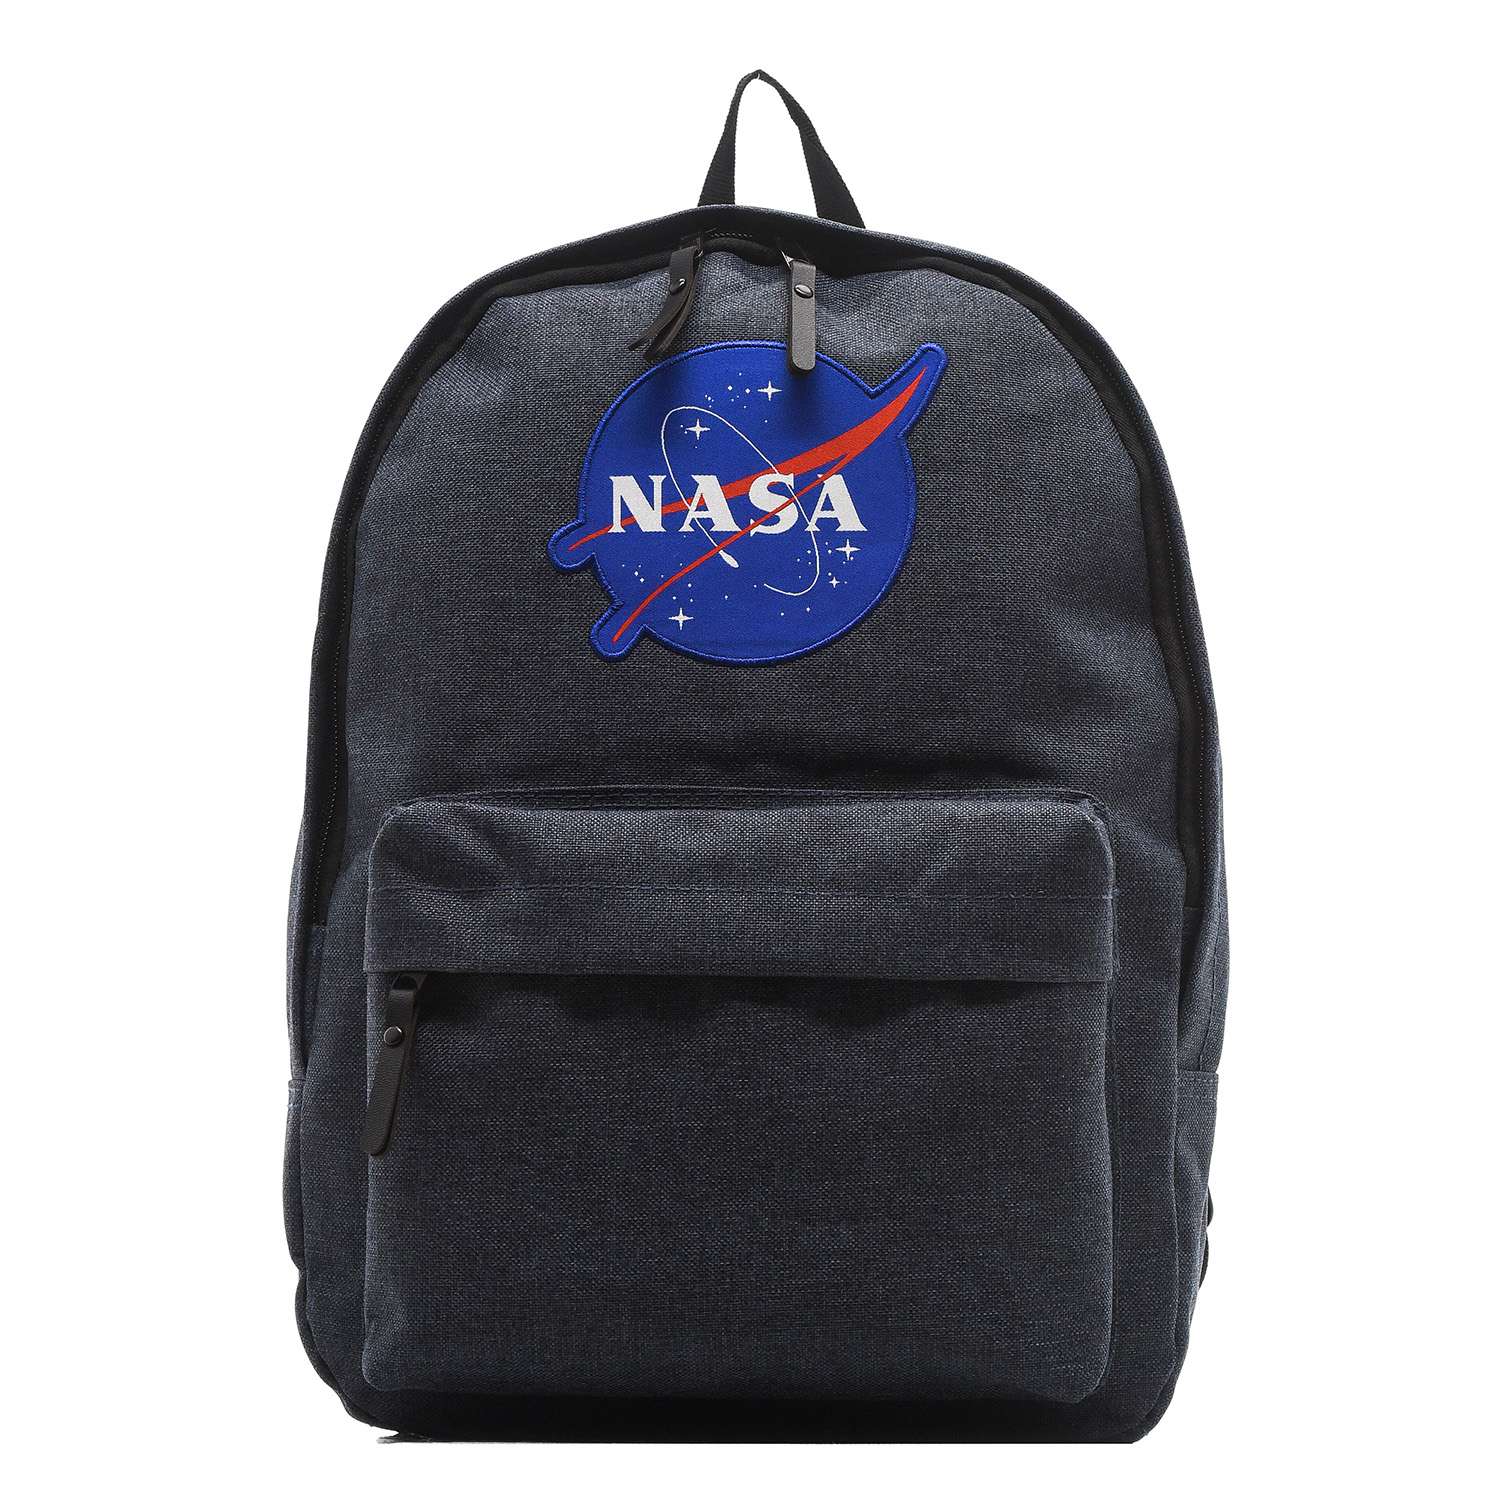 Рюкзак NASA 086109002-NAVY-17 - фото 1